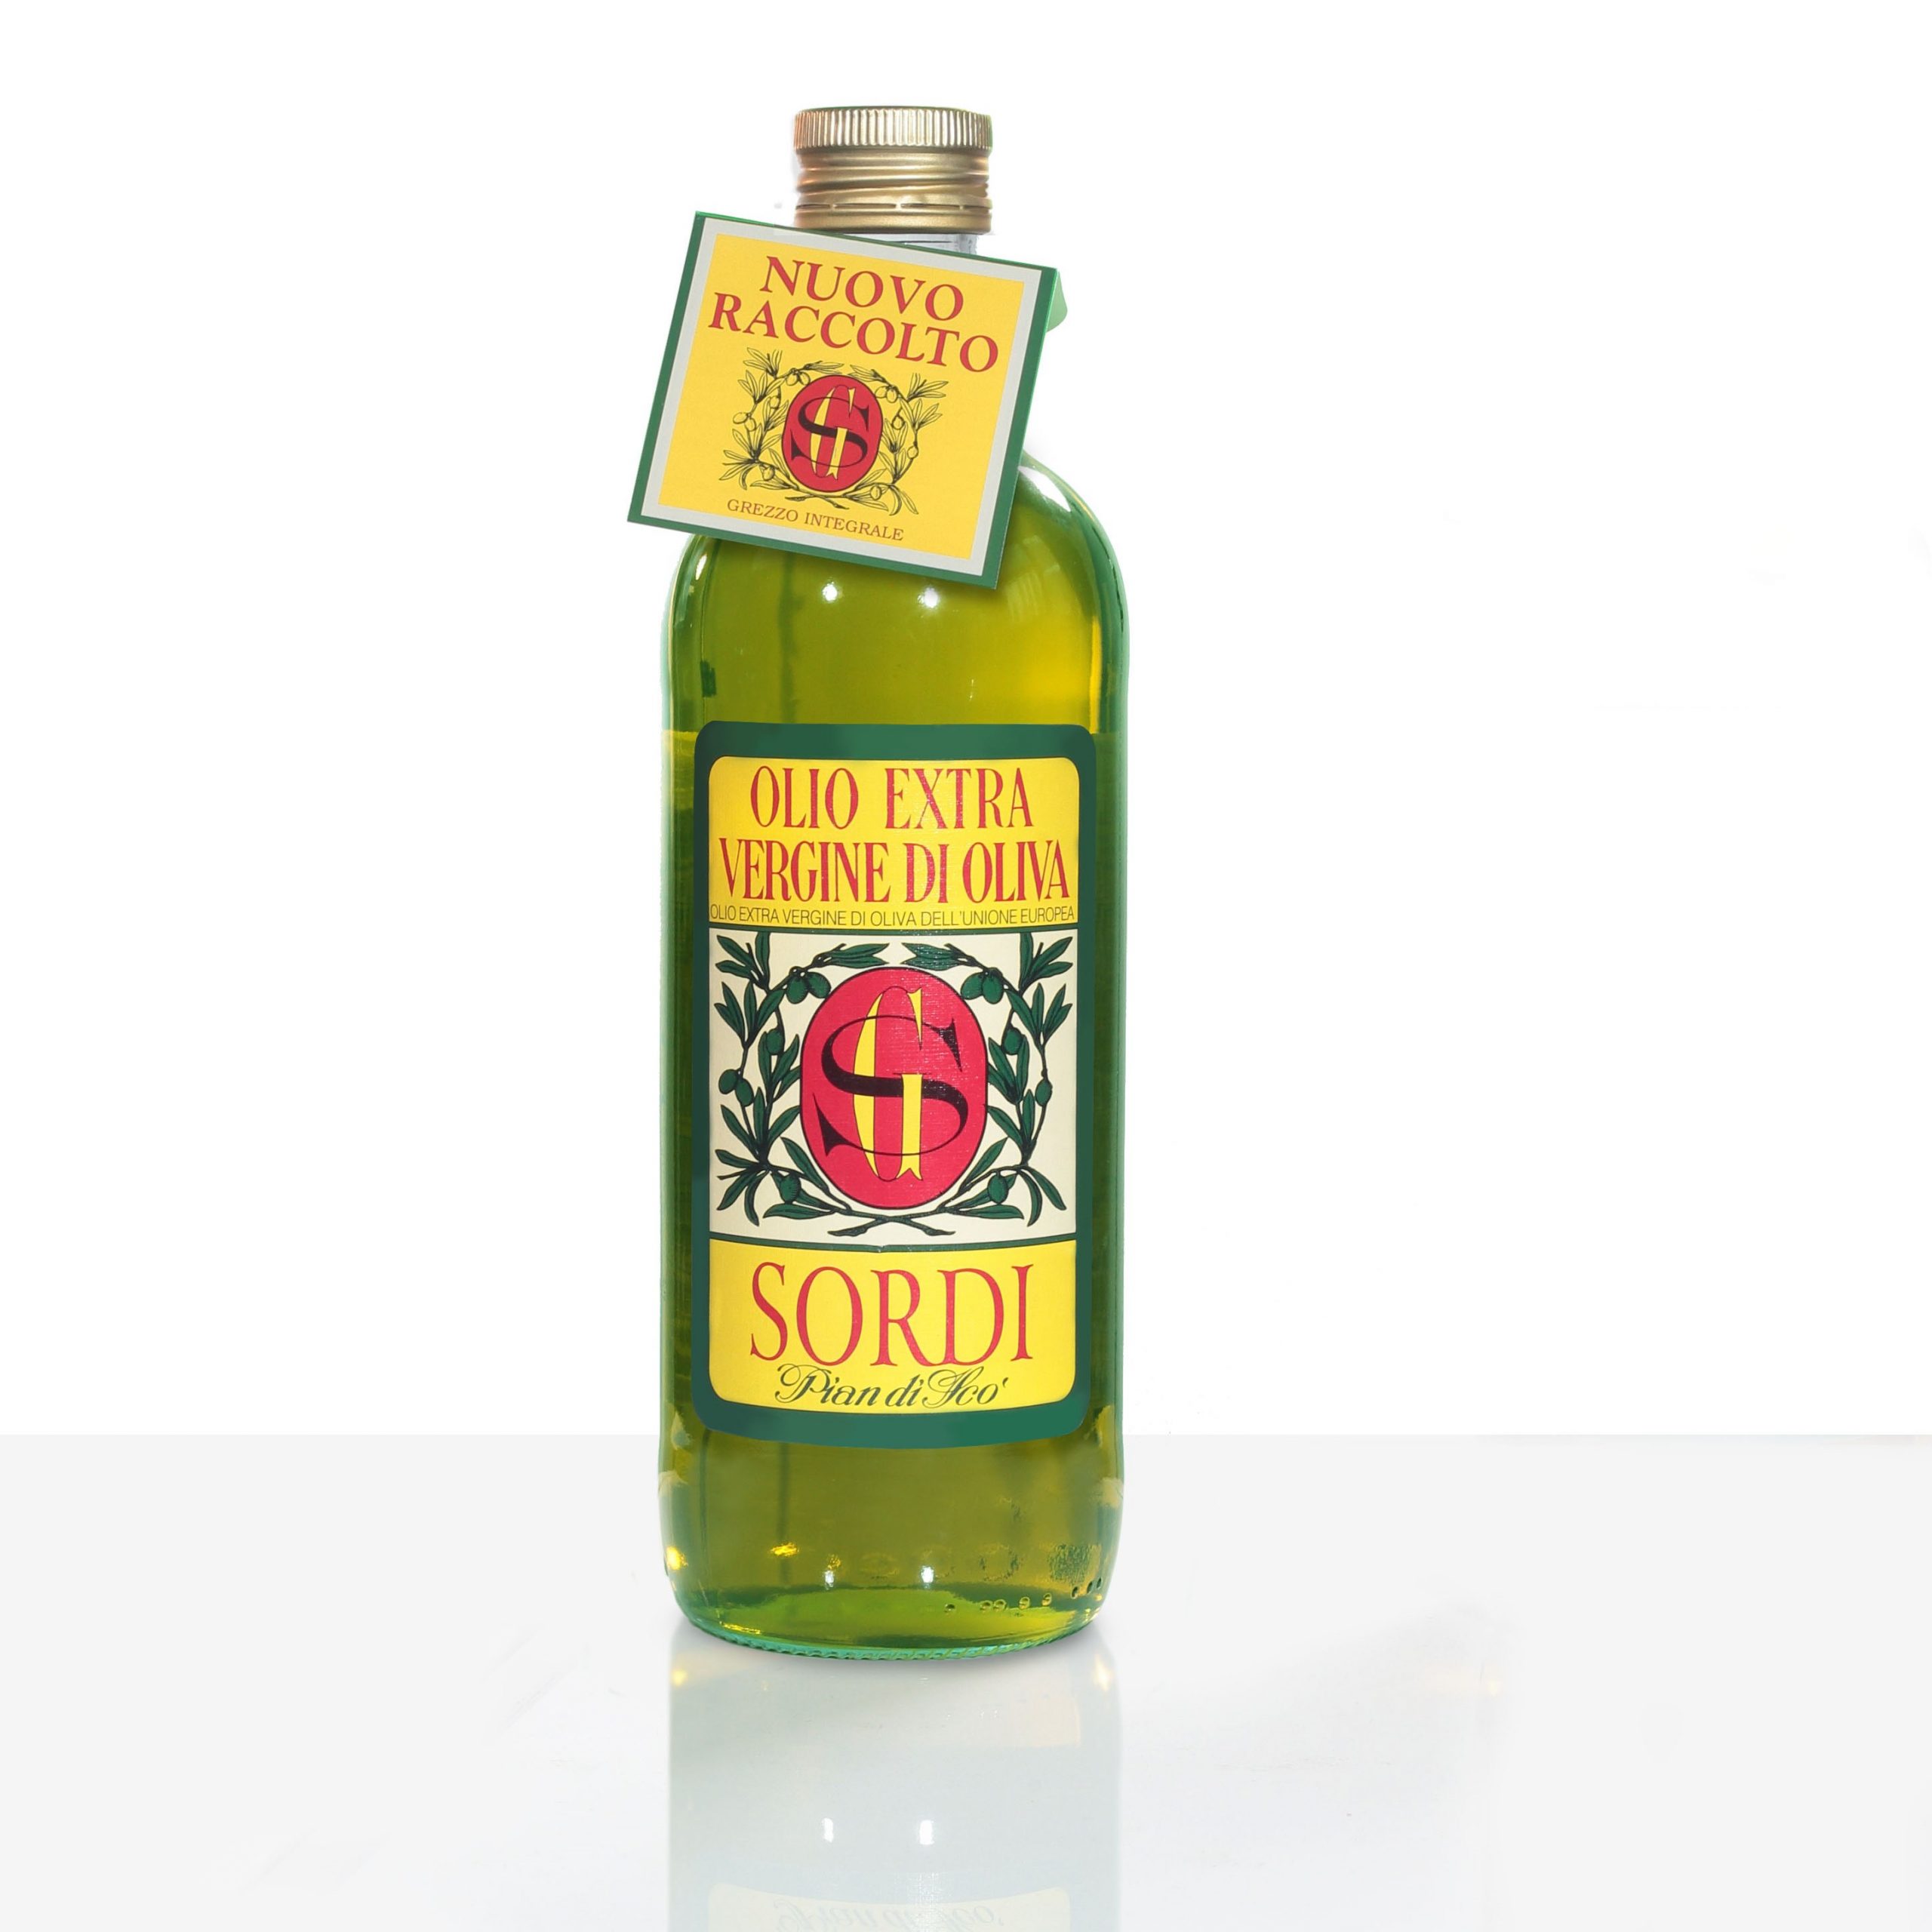 Bottiglia LT 1 Olio extra vergine di oliva dell'Unione Europea – Sordi  Giuseppe & Figli S.r.l